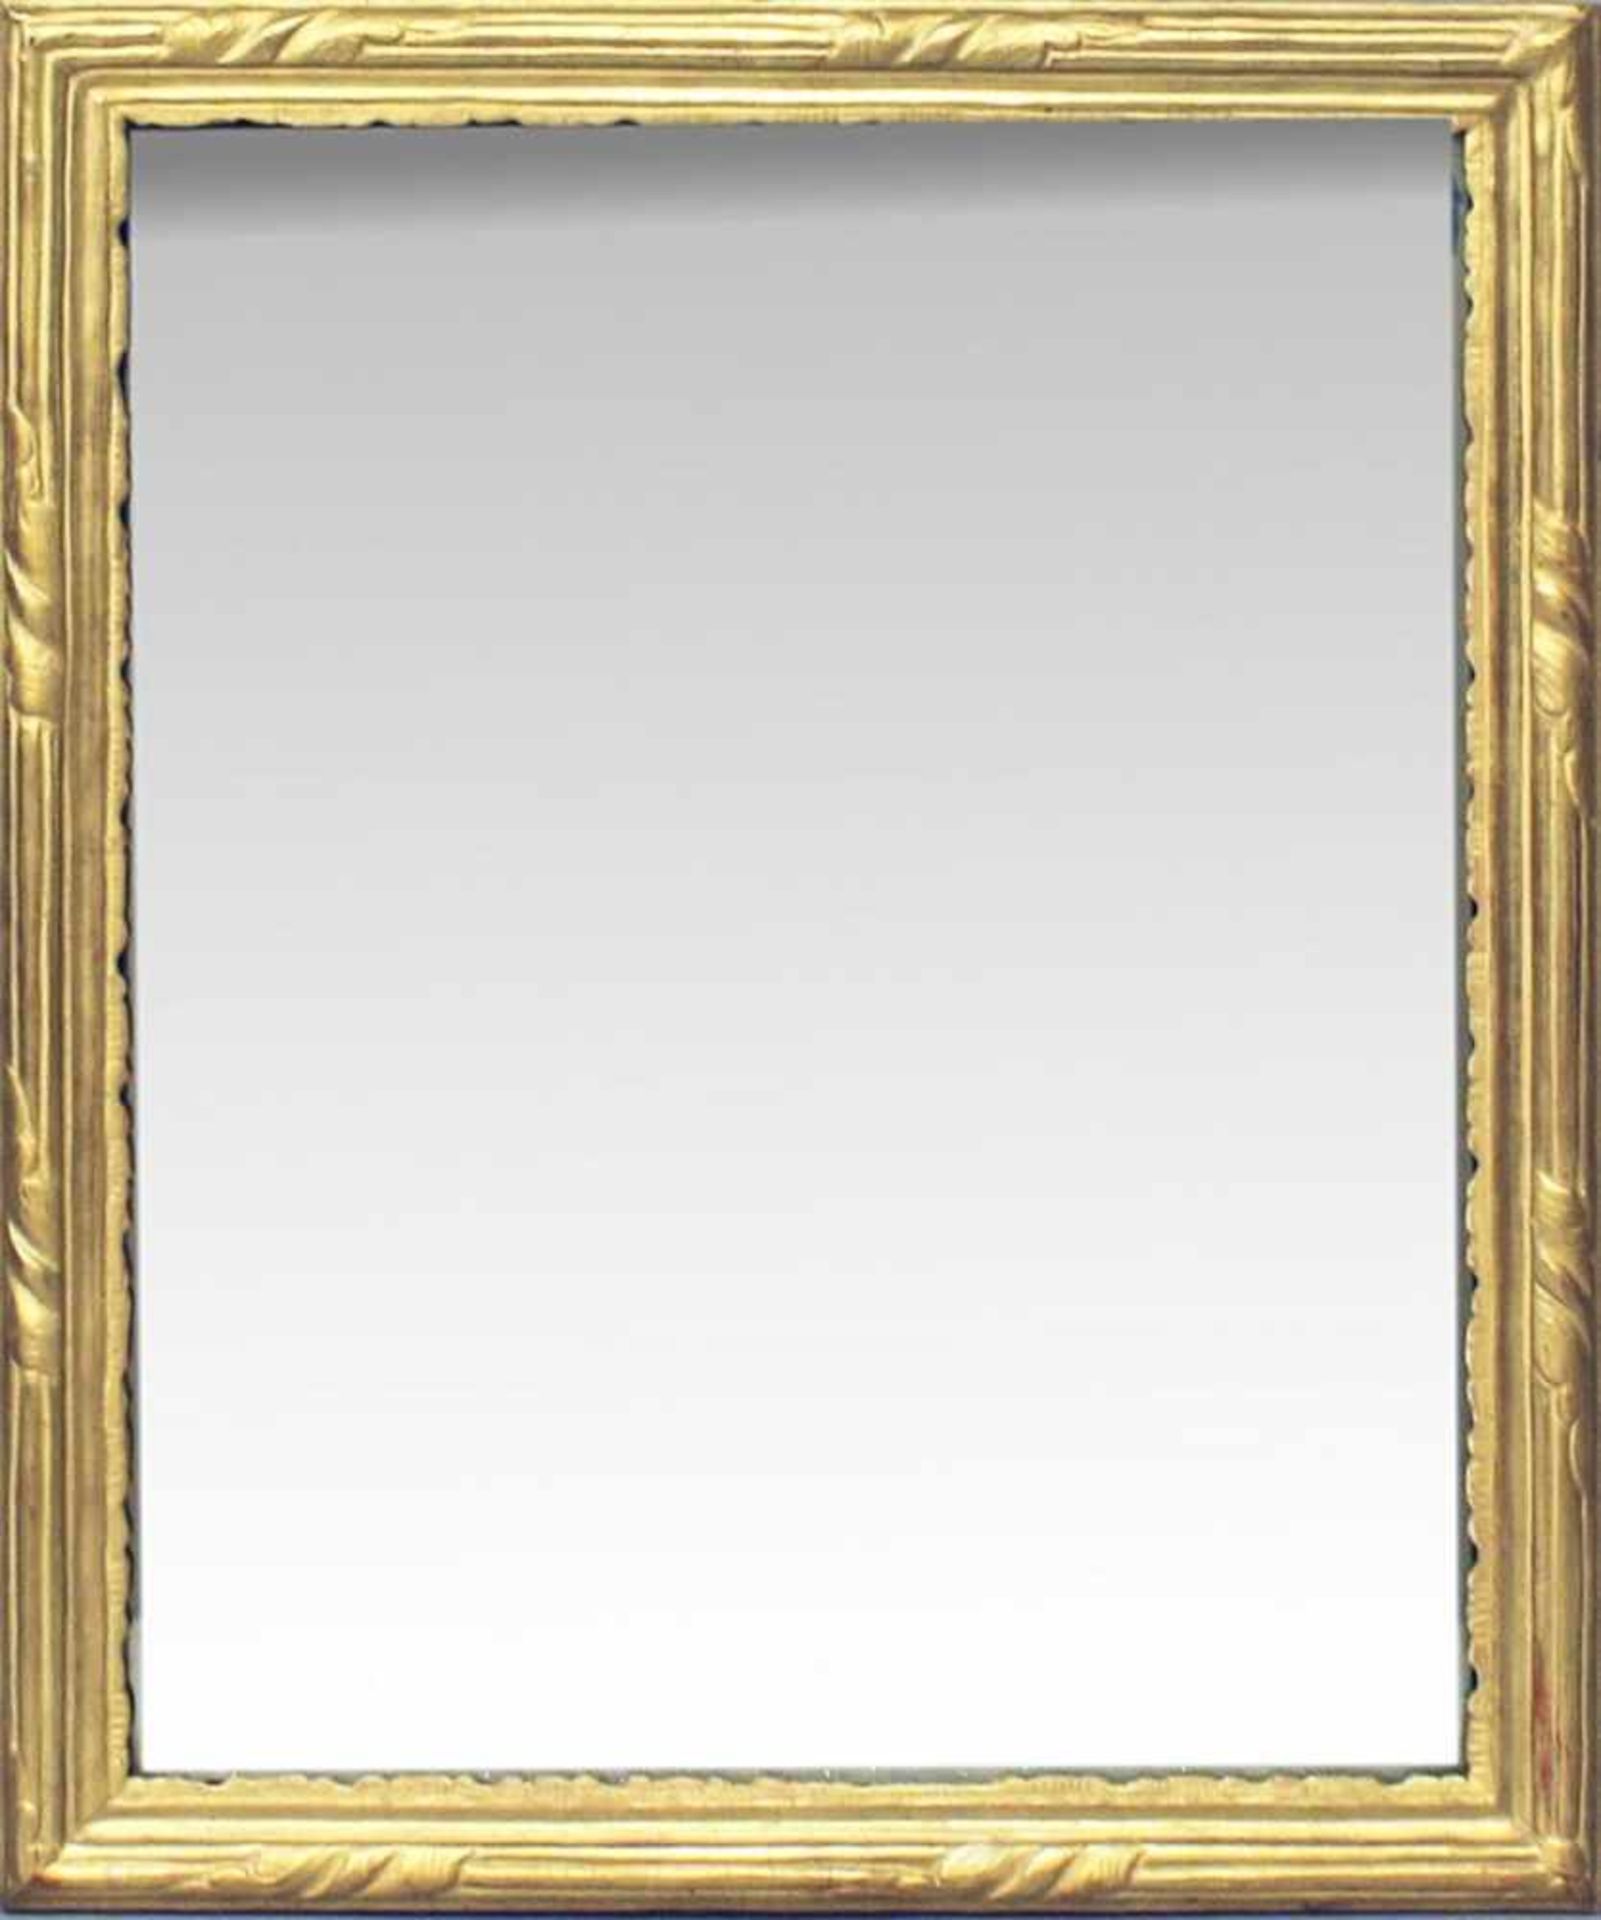 Napoleon III.-Spiegel (Frankreich, 2. Hälfte 19. Jh.).Holz und Stuck, goldgefasst. L.